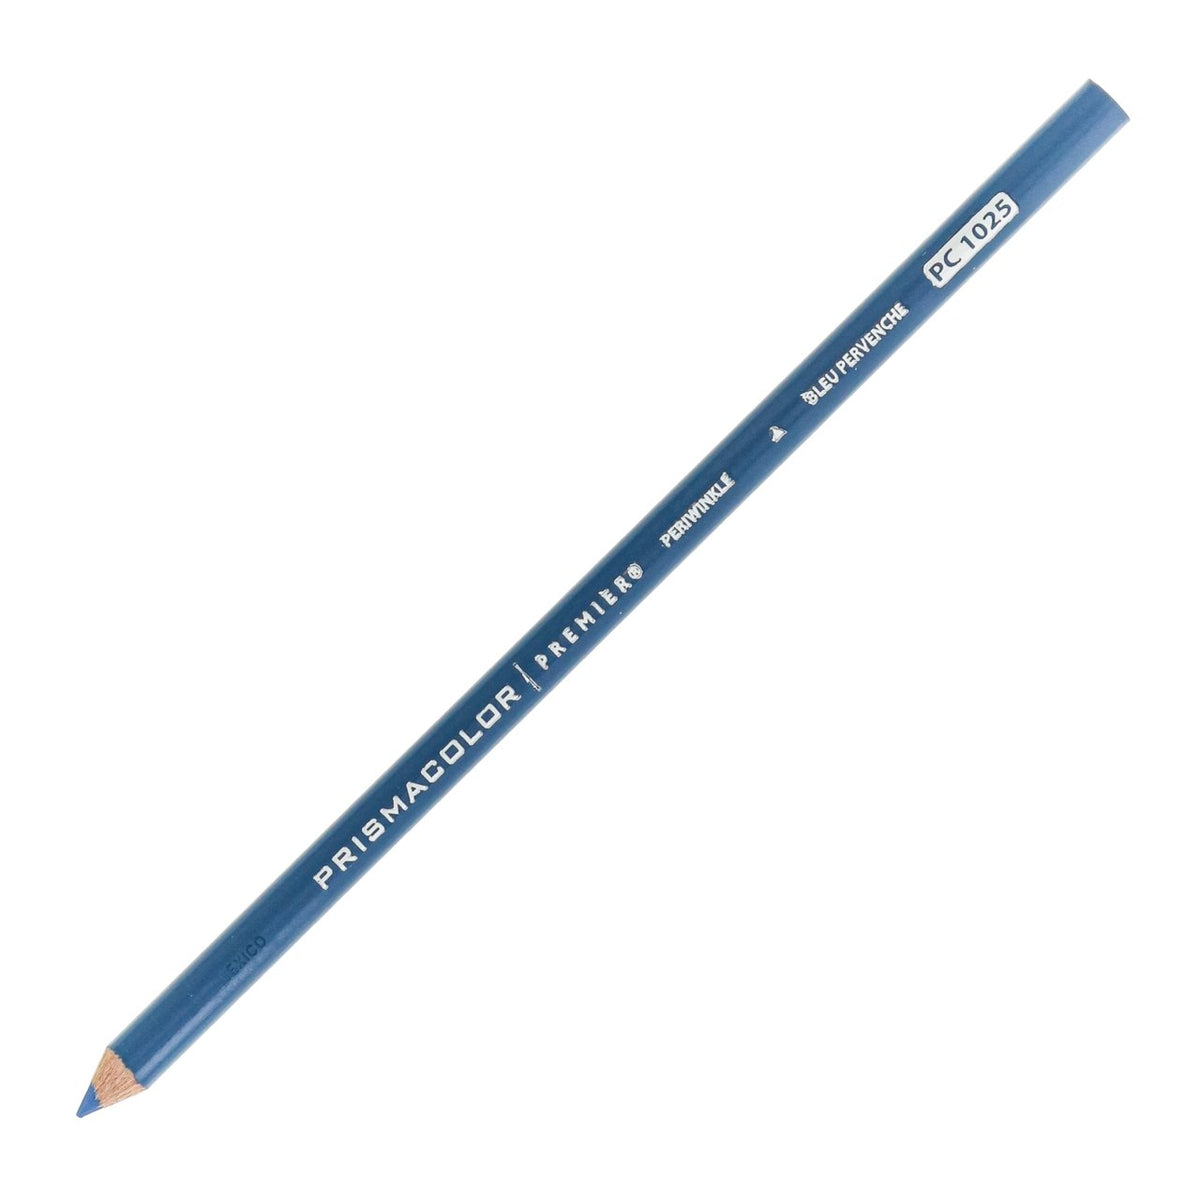 Prismacolor Premier Colored Pencil - Periwinkle 1025 - merriartist.com